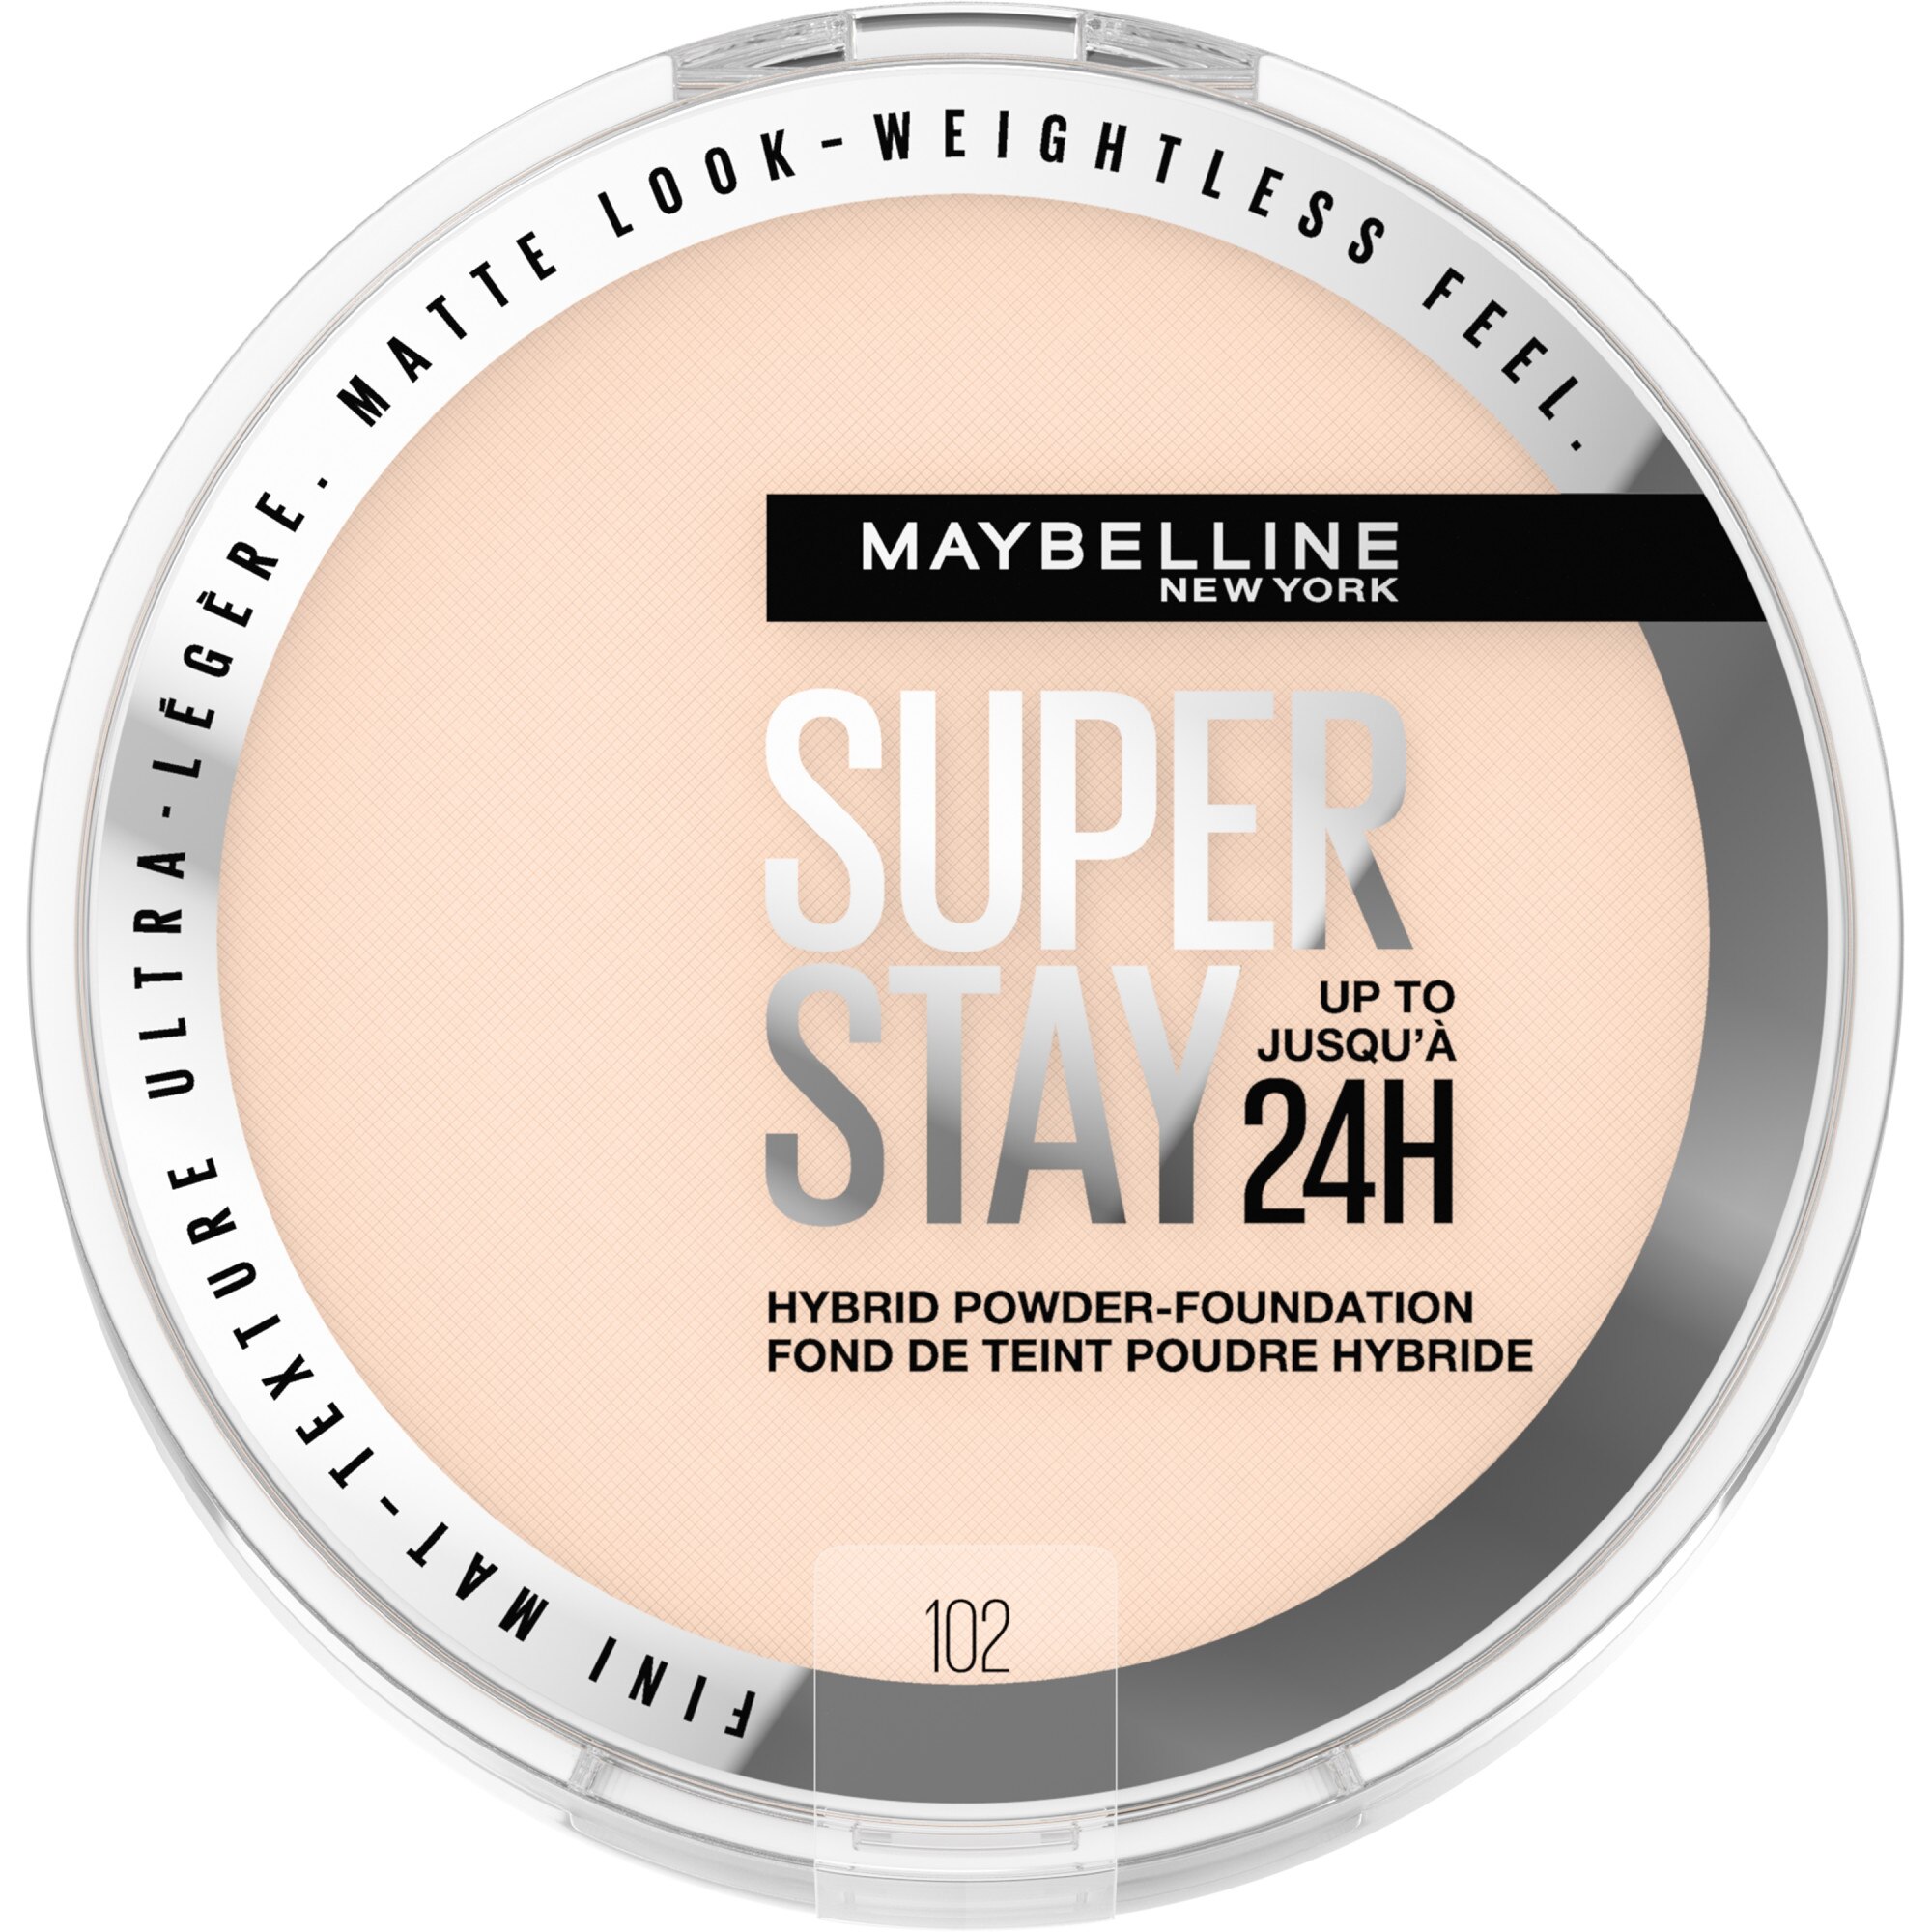 Maybelline New York Super Stay Up To 24HR Hybrid Powder-Foundation, 102, 0.21 Oz , CVS